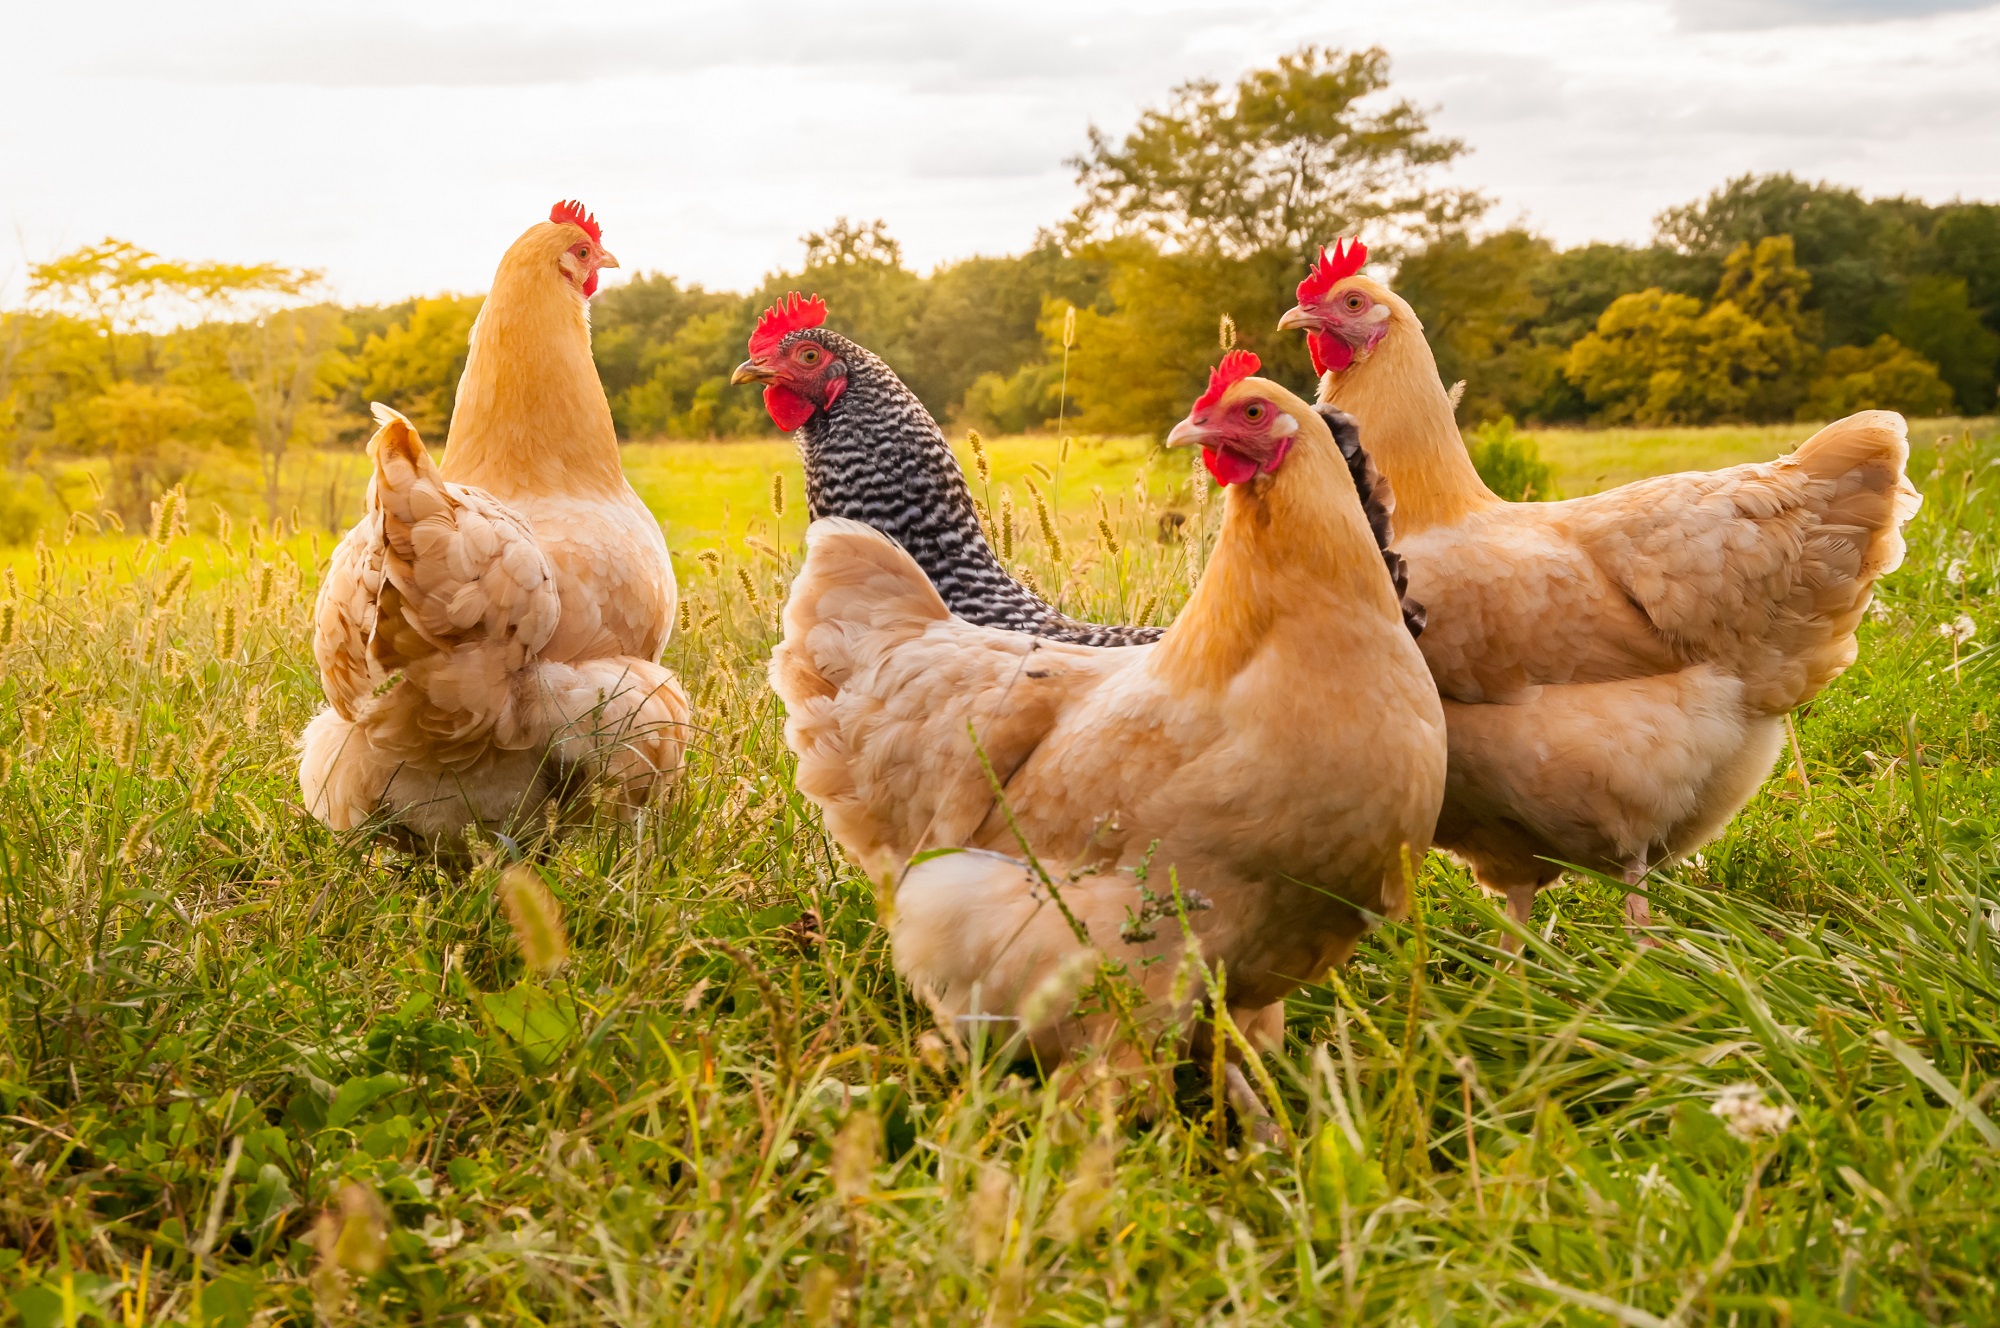 Kurczaki na wolnym wybiegu, fot. Shutterstock.com